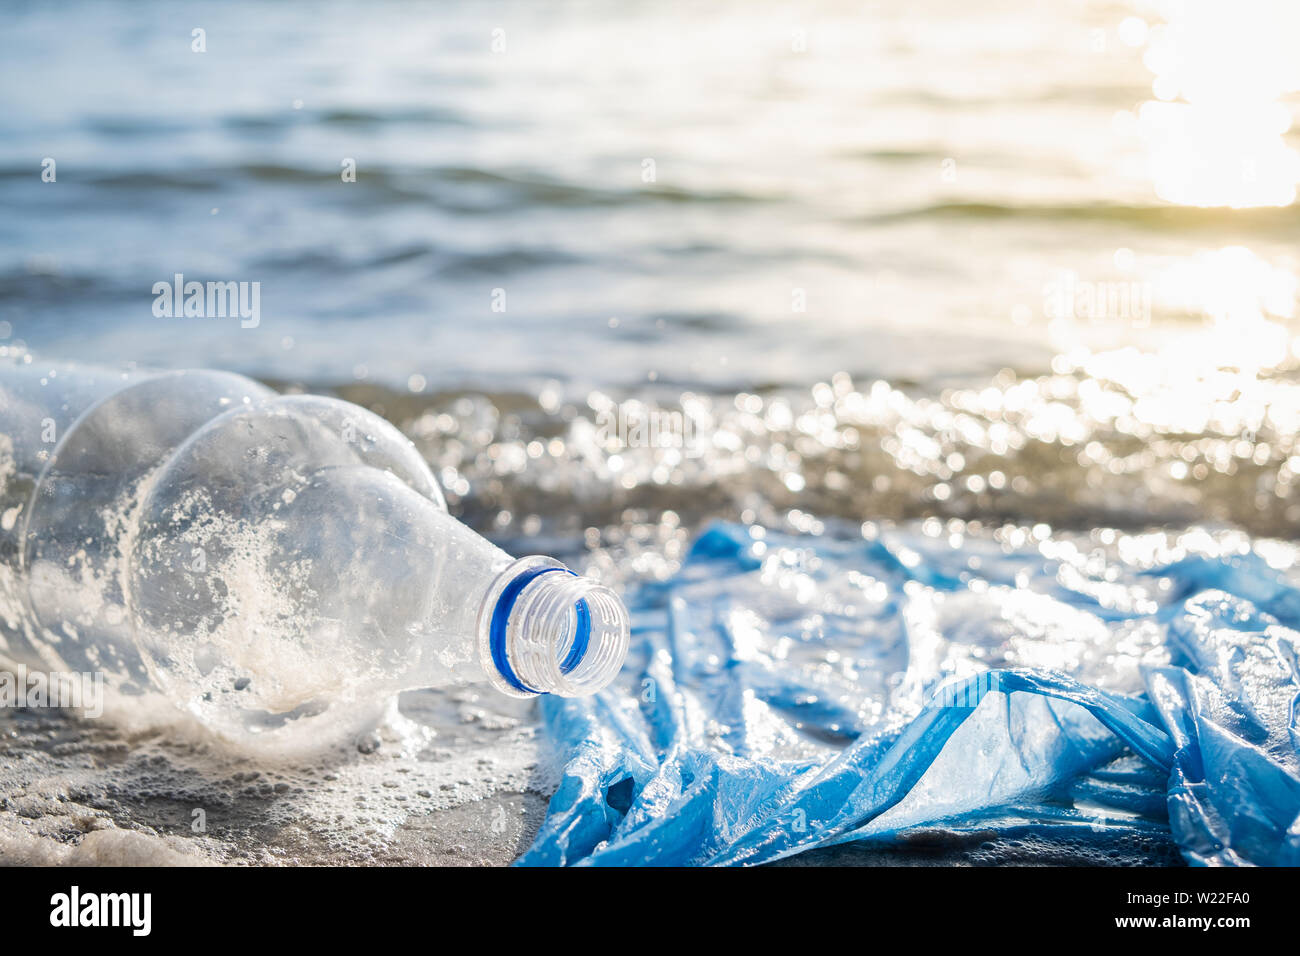 Le sac en plastique et les bouteilles sur la plage, mer et la pollution de l'eau concept. Corbeille vide (emballage alimentaire) jetés à la mer, vue rapprochée dans di Banque D'Images